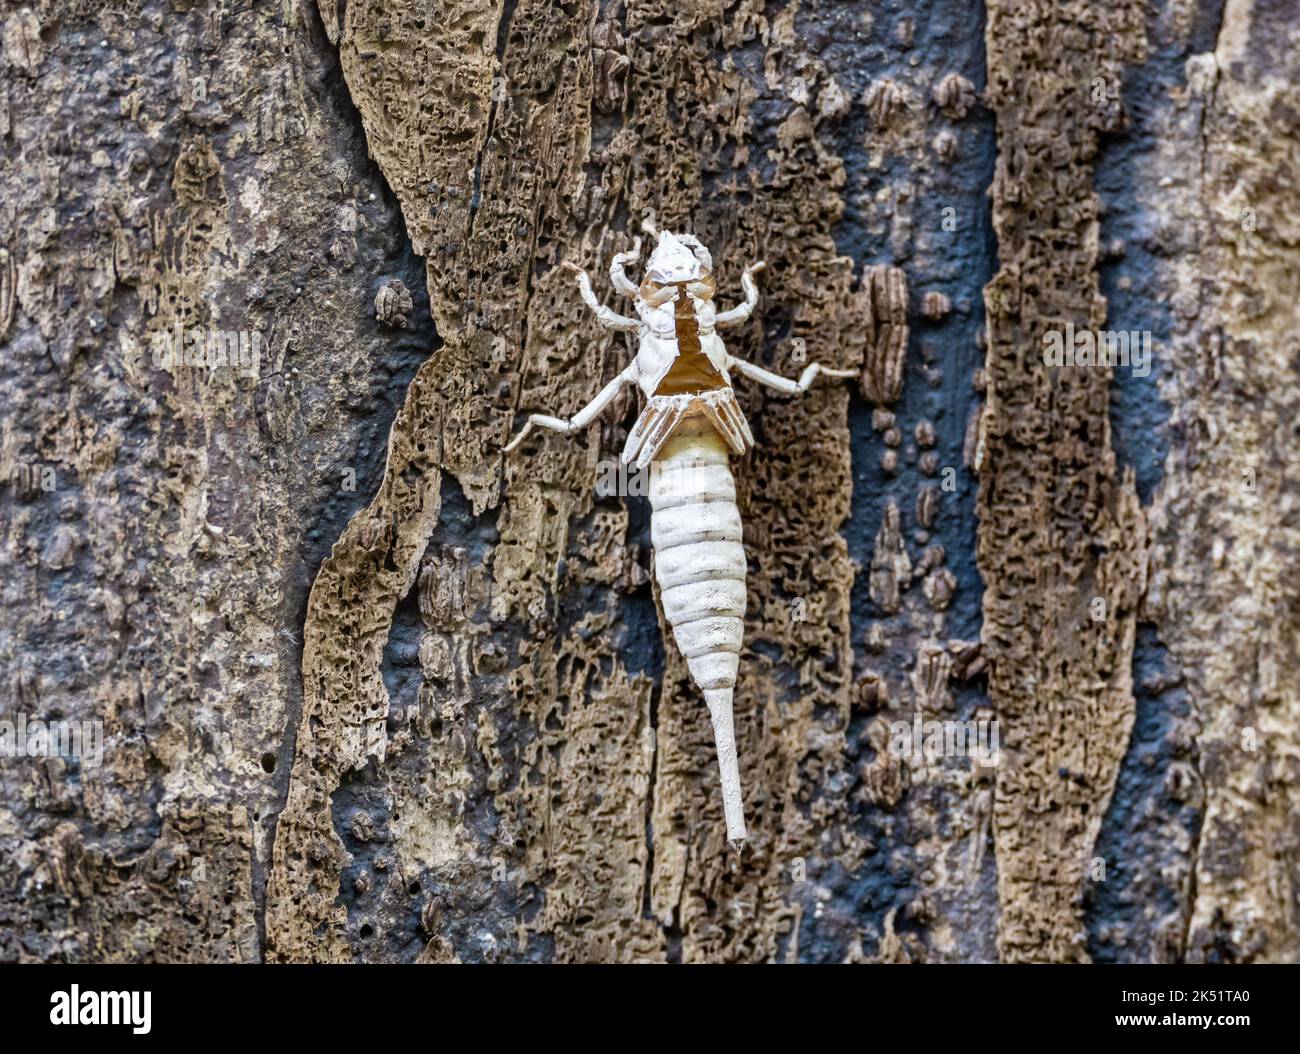 Una muda exoesqueleto hueco de ninfa libélula en el tronco de un árbol. Amazonas, Brasil. Foto de stock